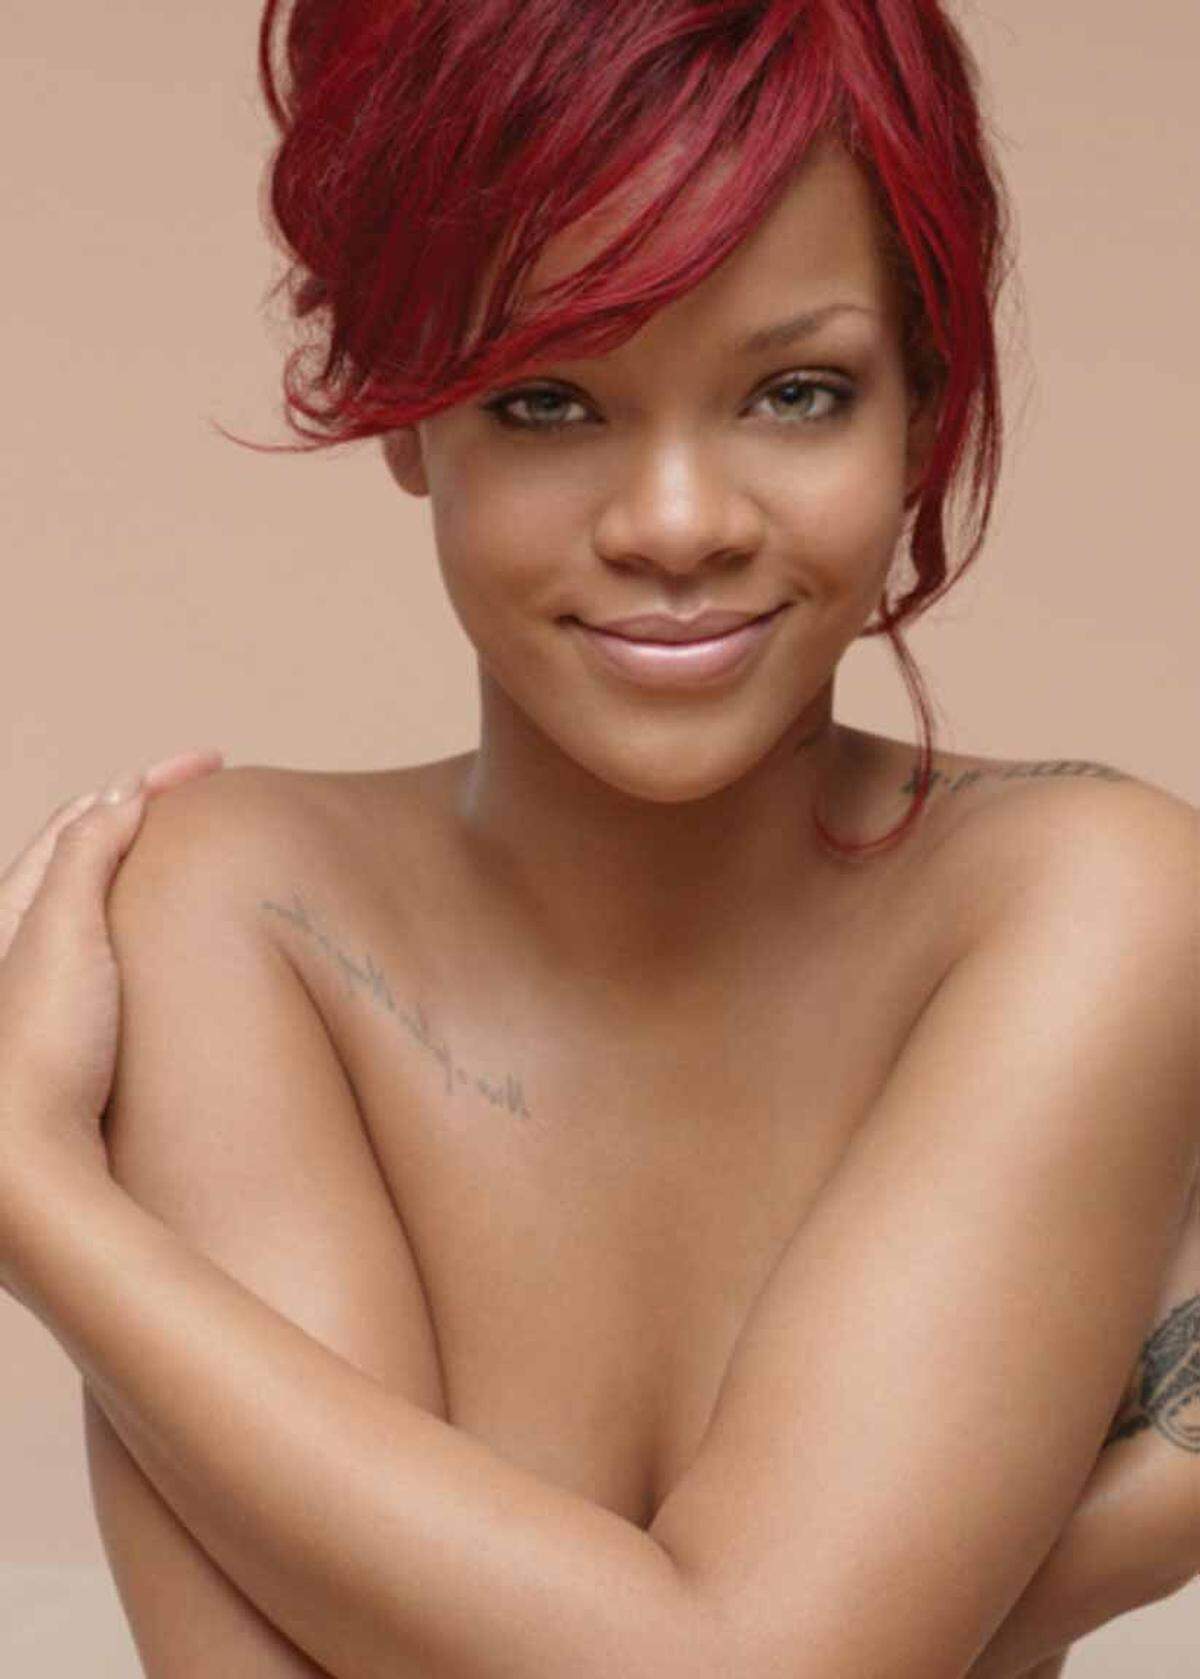 Rihanna verlor ihren Werbedeal mit Nivea, weil sie sich zu provokant kleidete. Als hinausgeschmissenes Geld bezeichnete der neue Beiersdorf-Chef Stefan Heidenreich die Kampagne bei einer Bilanzpressekonferenz 2012. "Ich kann nicht verstehen, wie man Rihanna mit dem Markenkern verbunden hat."